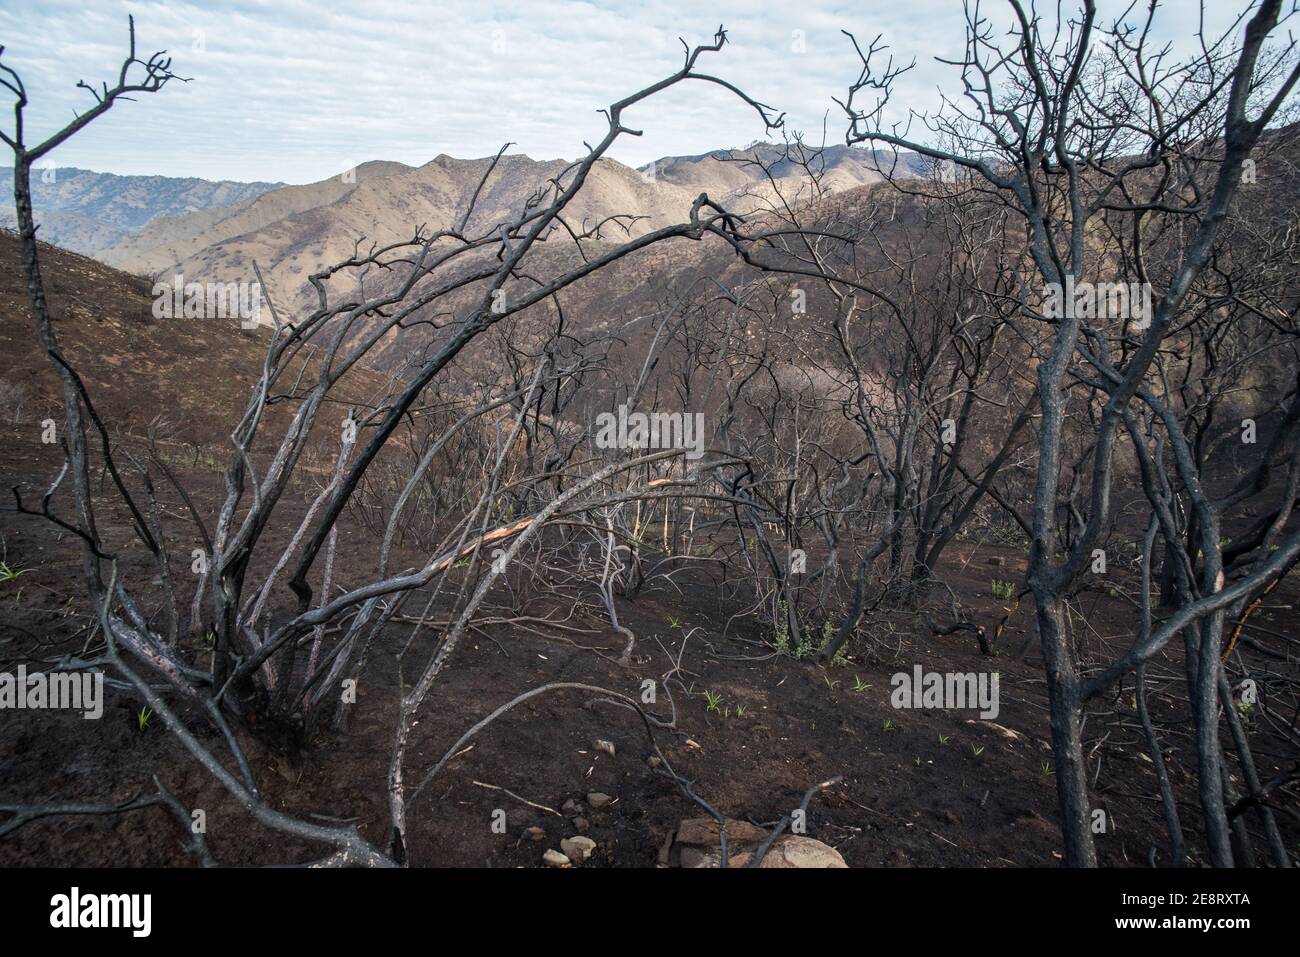 Vegetazione morta e bruciata lasciata in piedi dopo che gli incendi selvatici erano passati attraverso questa parte della California, lasciando dietro un paesaggio carrizzato. Foto Stock